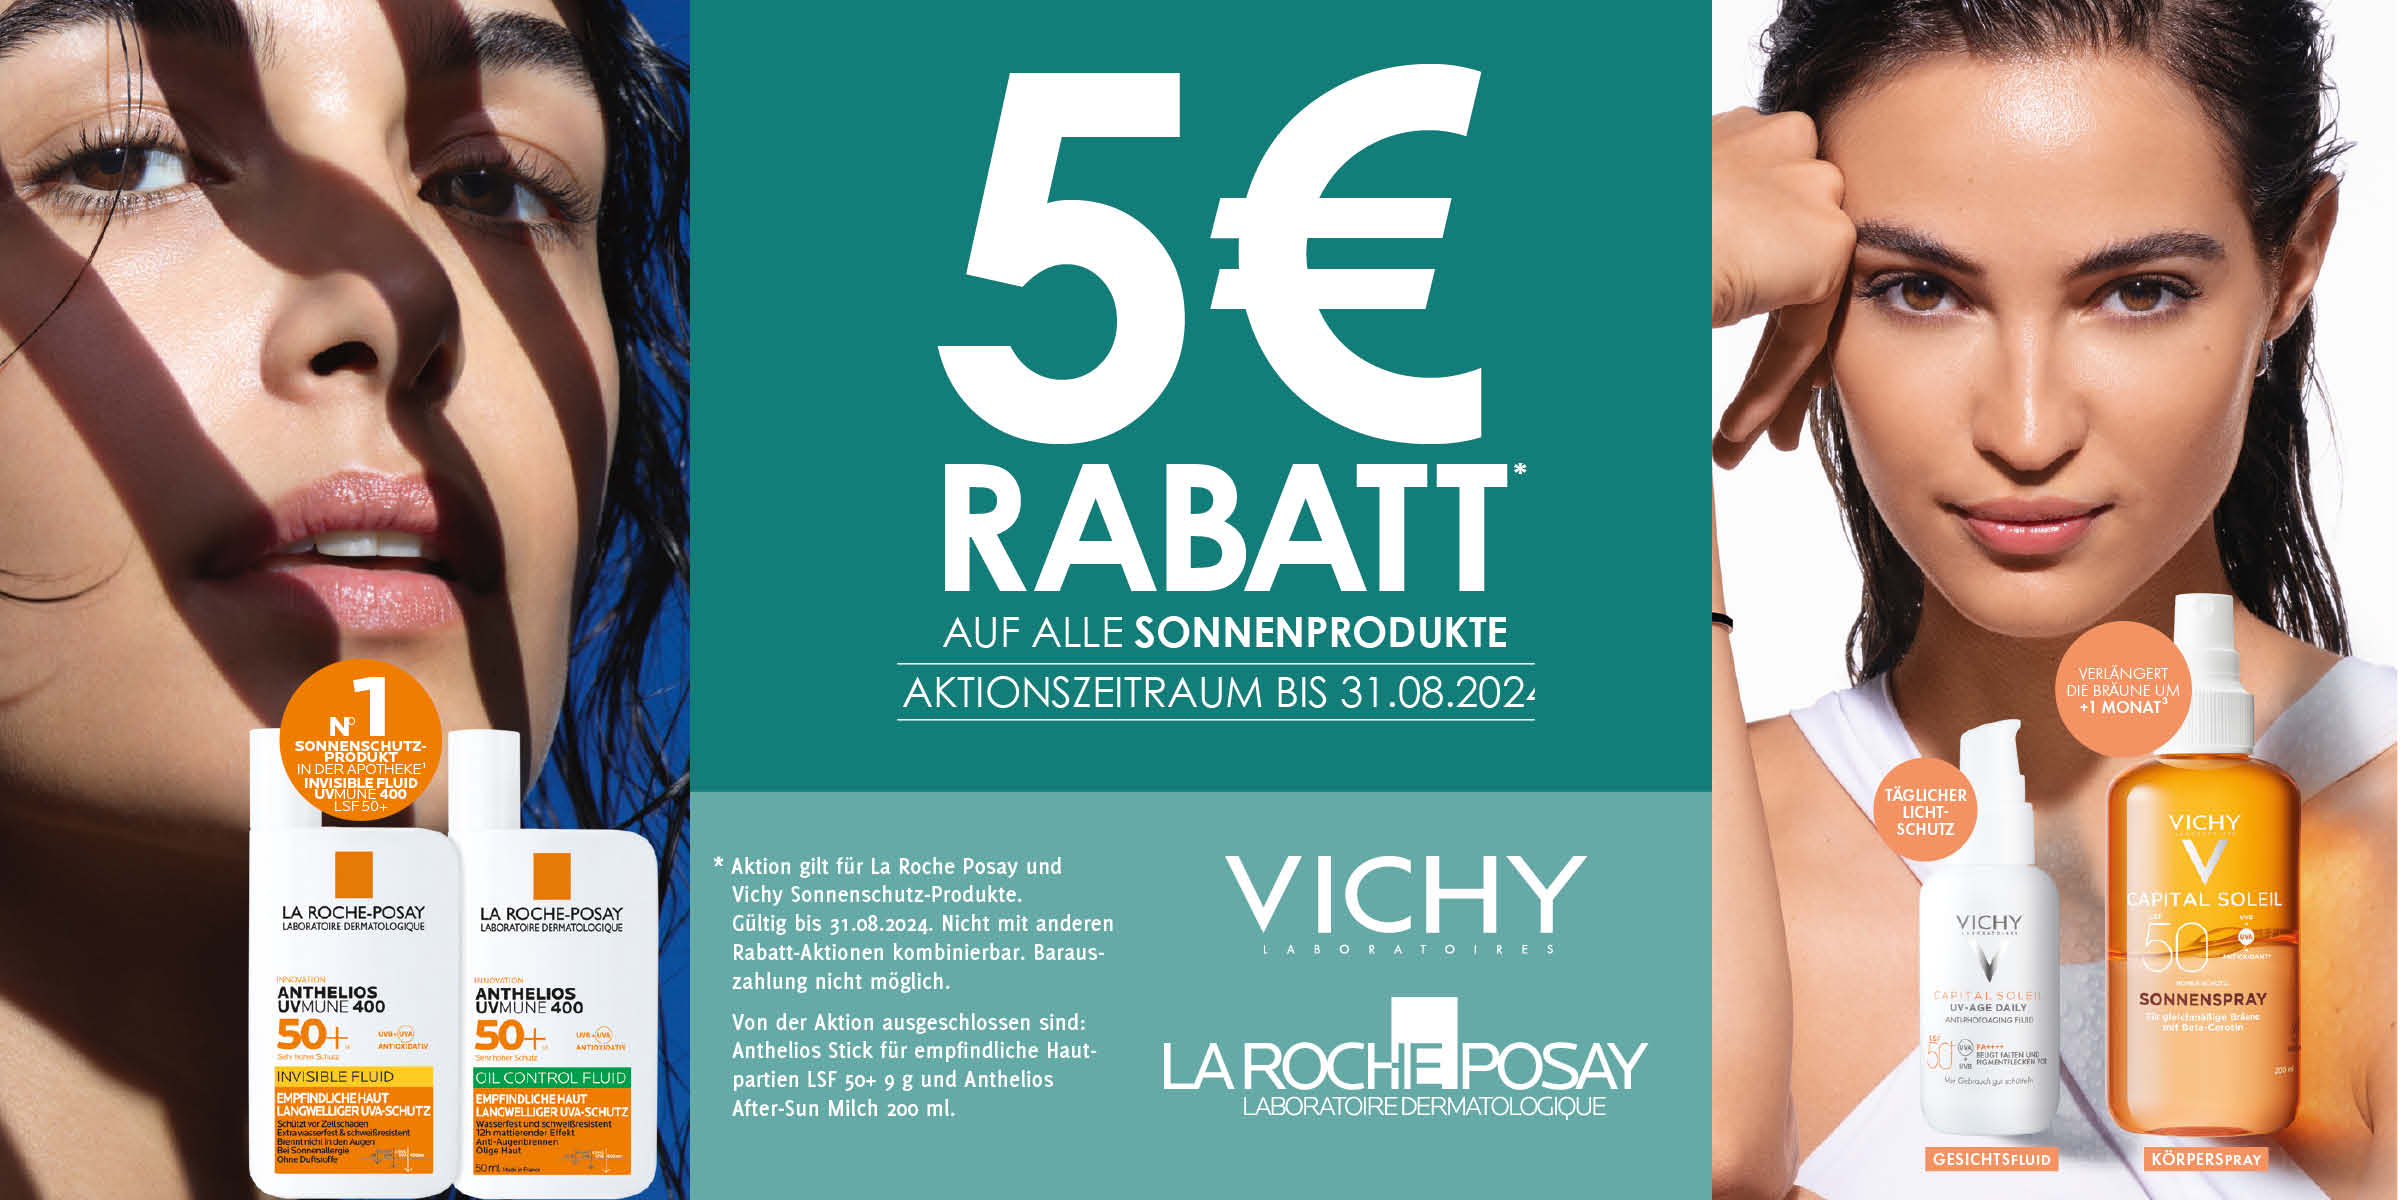 Rabattaktion bei Sonnenschutzpflege, zwei Frauengesichter werben für Produkte vcon Vichy und La Roche Posay